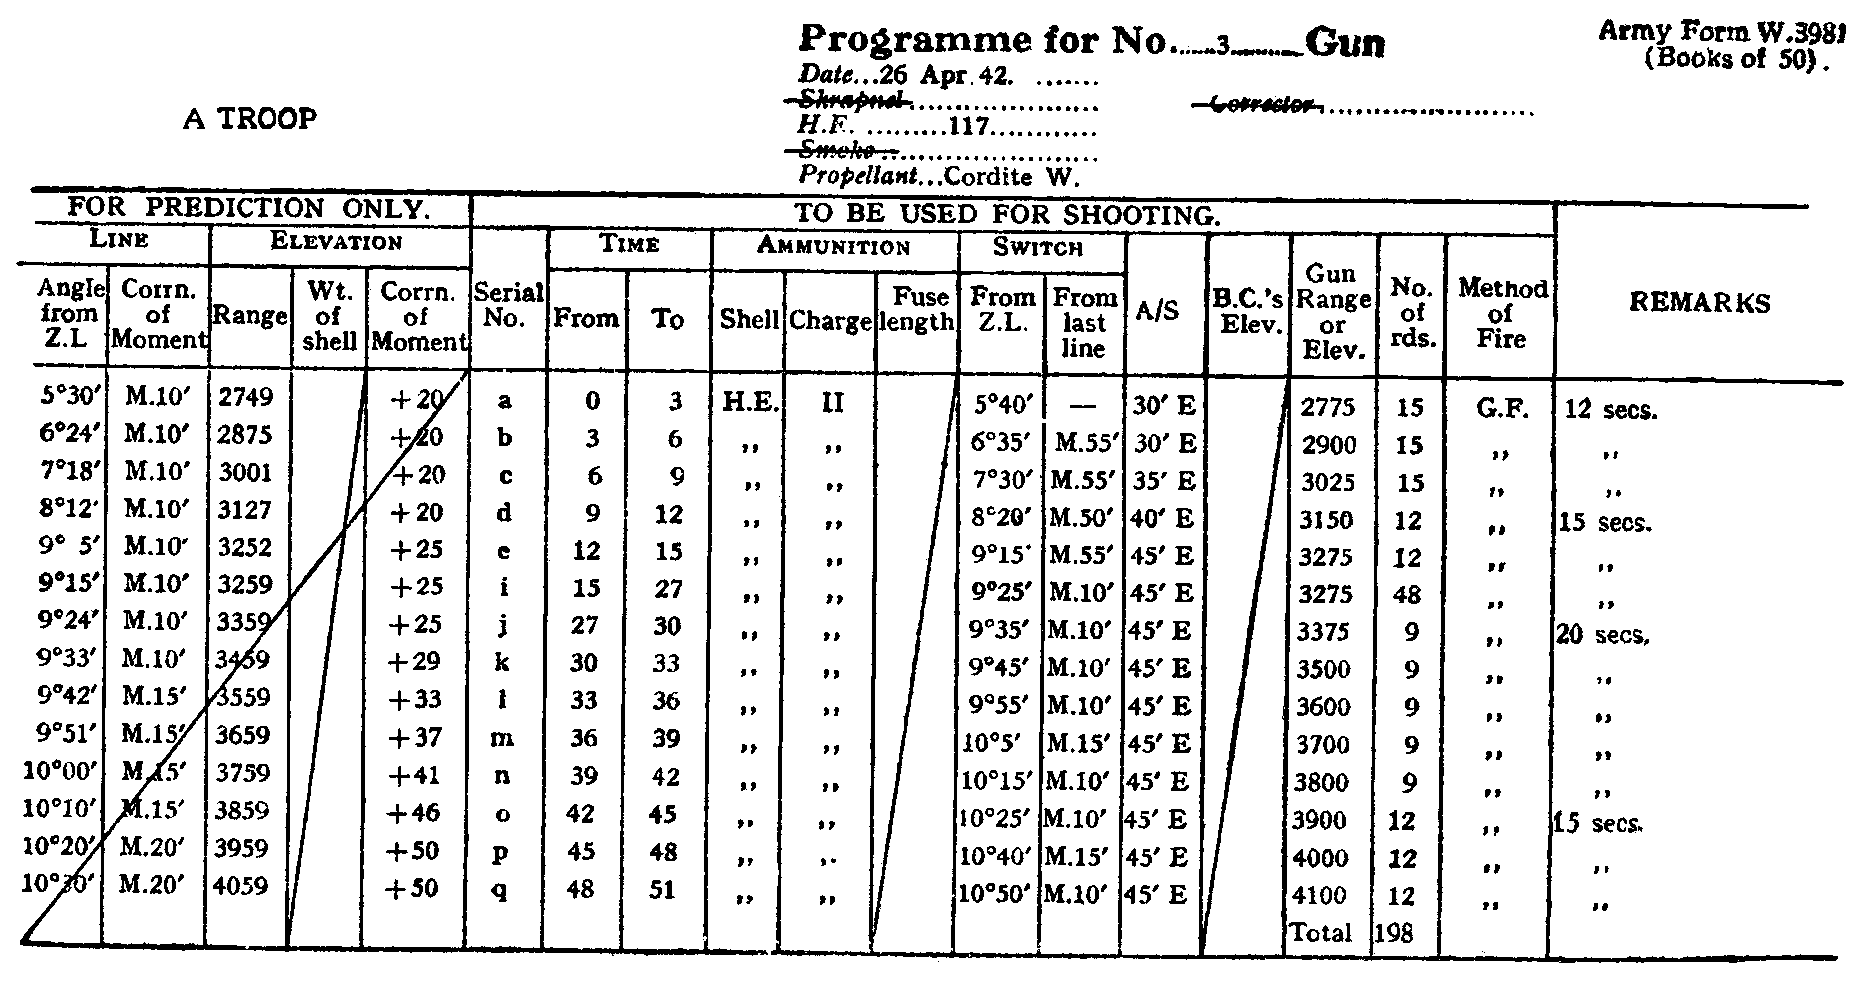 Example gun programme